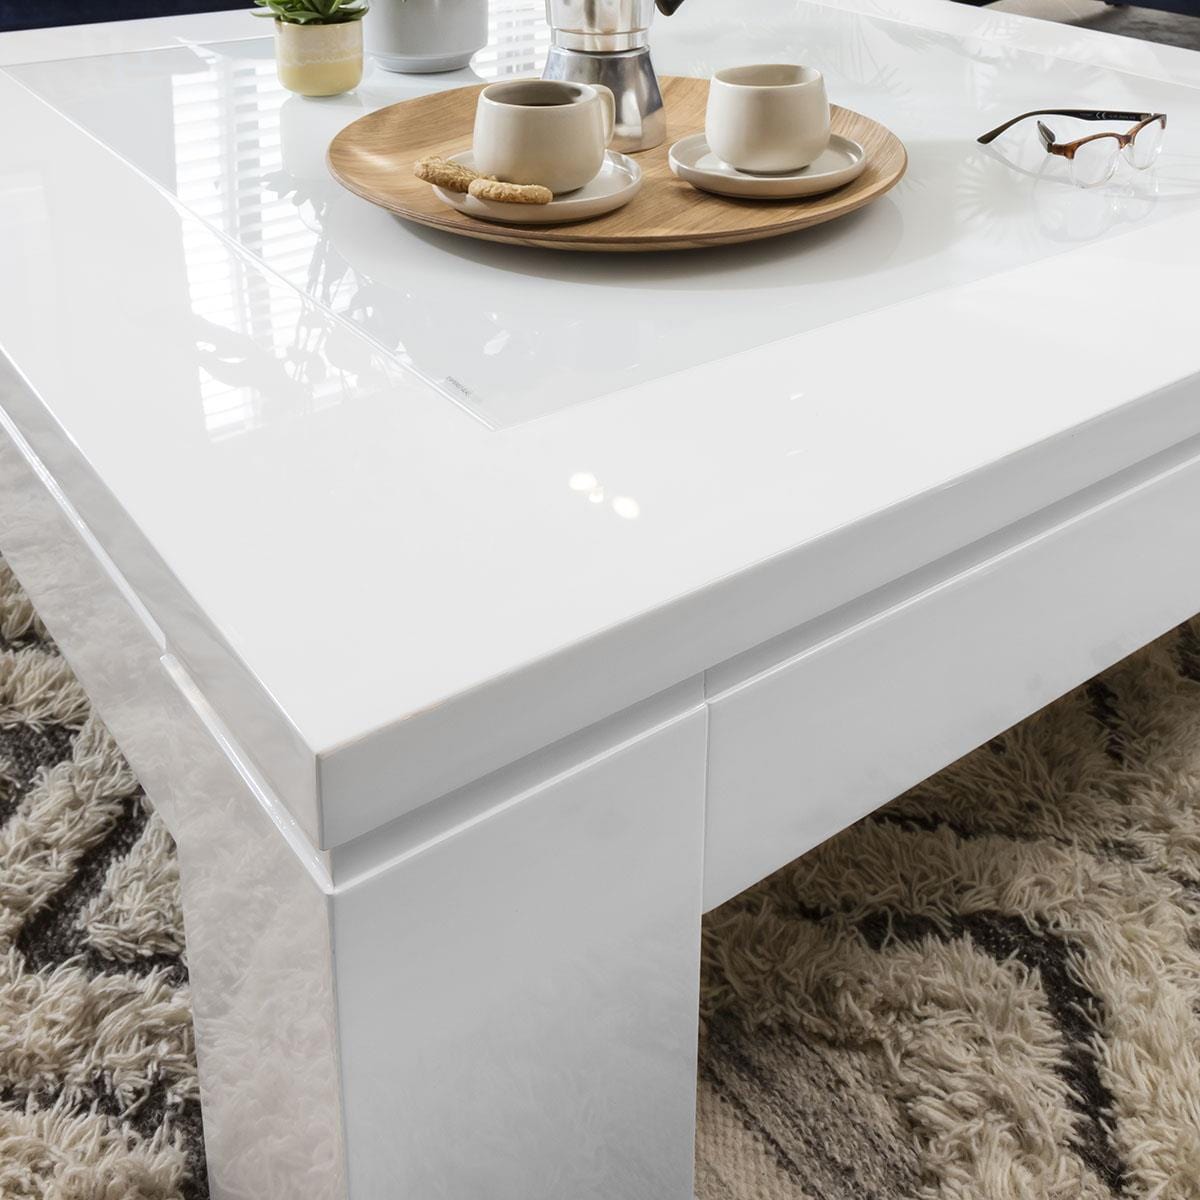 Quatropi Quatropi Square Coffee Table 120cm White Gloss - Glass Top